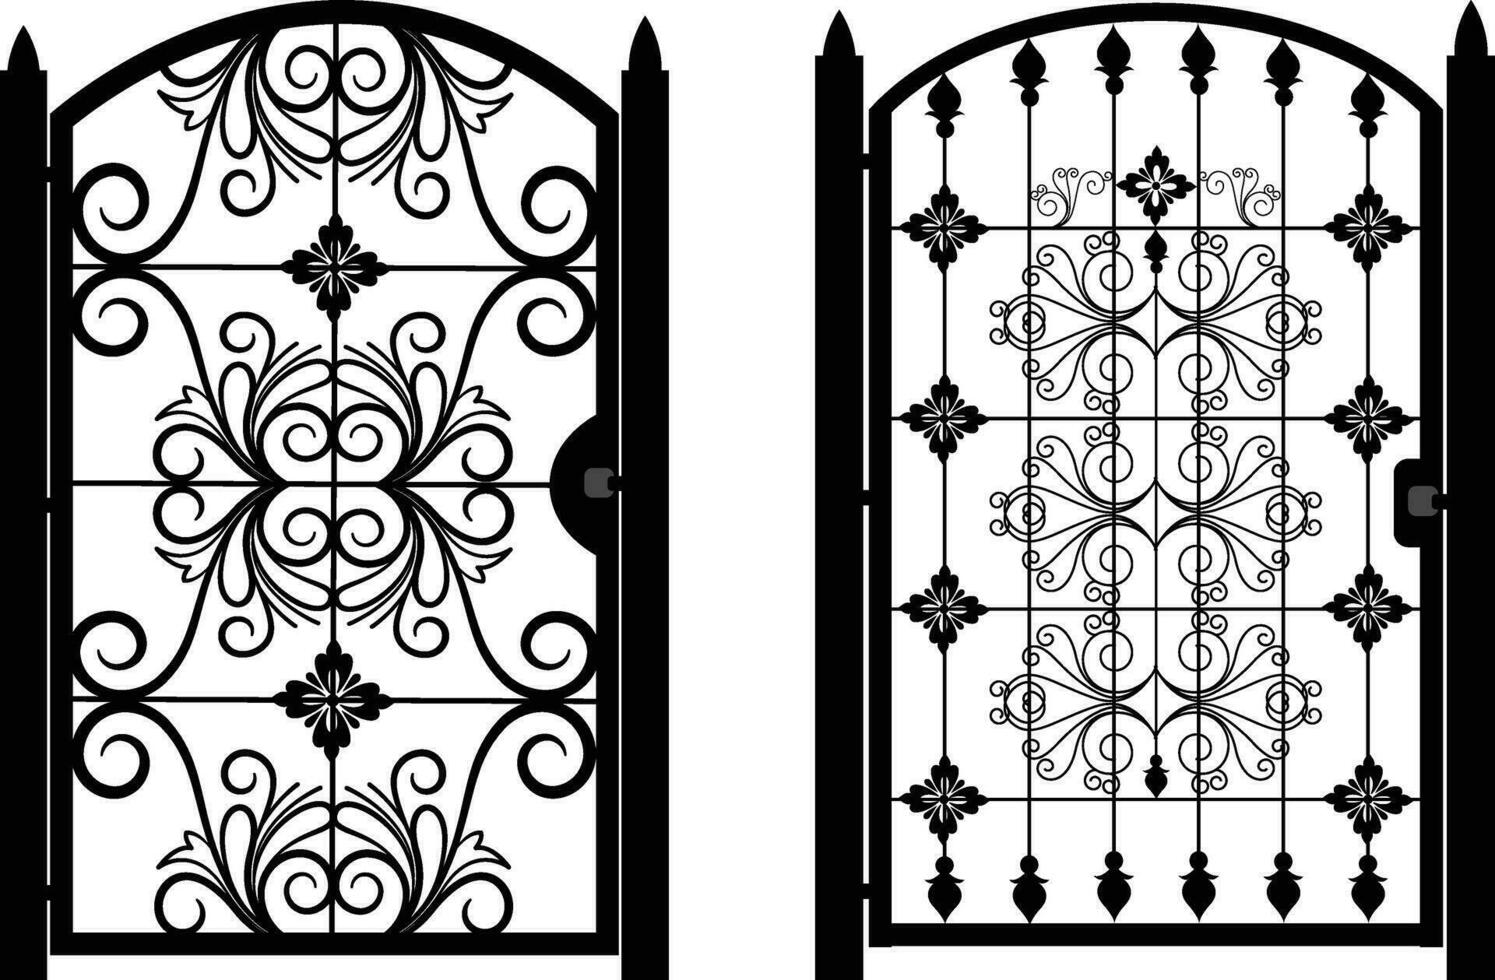 Eisen Vorderseite Tür, modern geschmiedet Tore, Tor Symbol, Portal Zeichen, dekorativ Metall Tore mit wirbelt, Pfeile und Ornamente, Vektor Abbildung-4